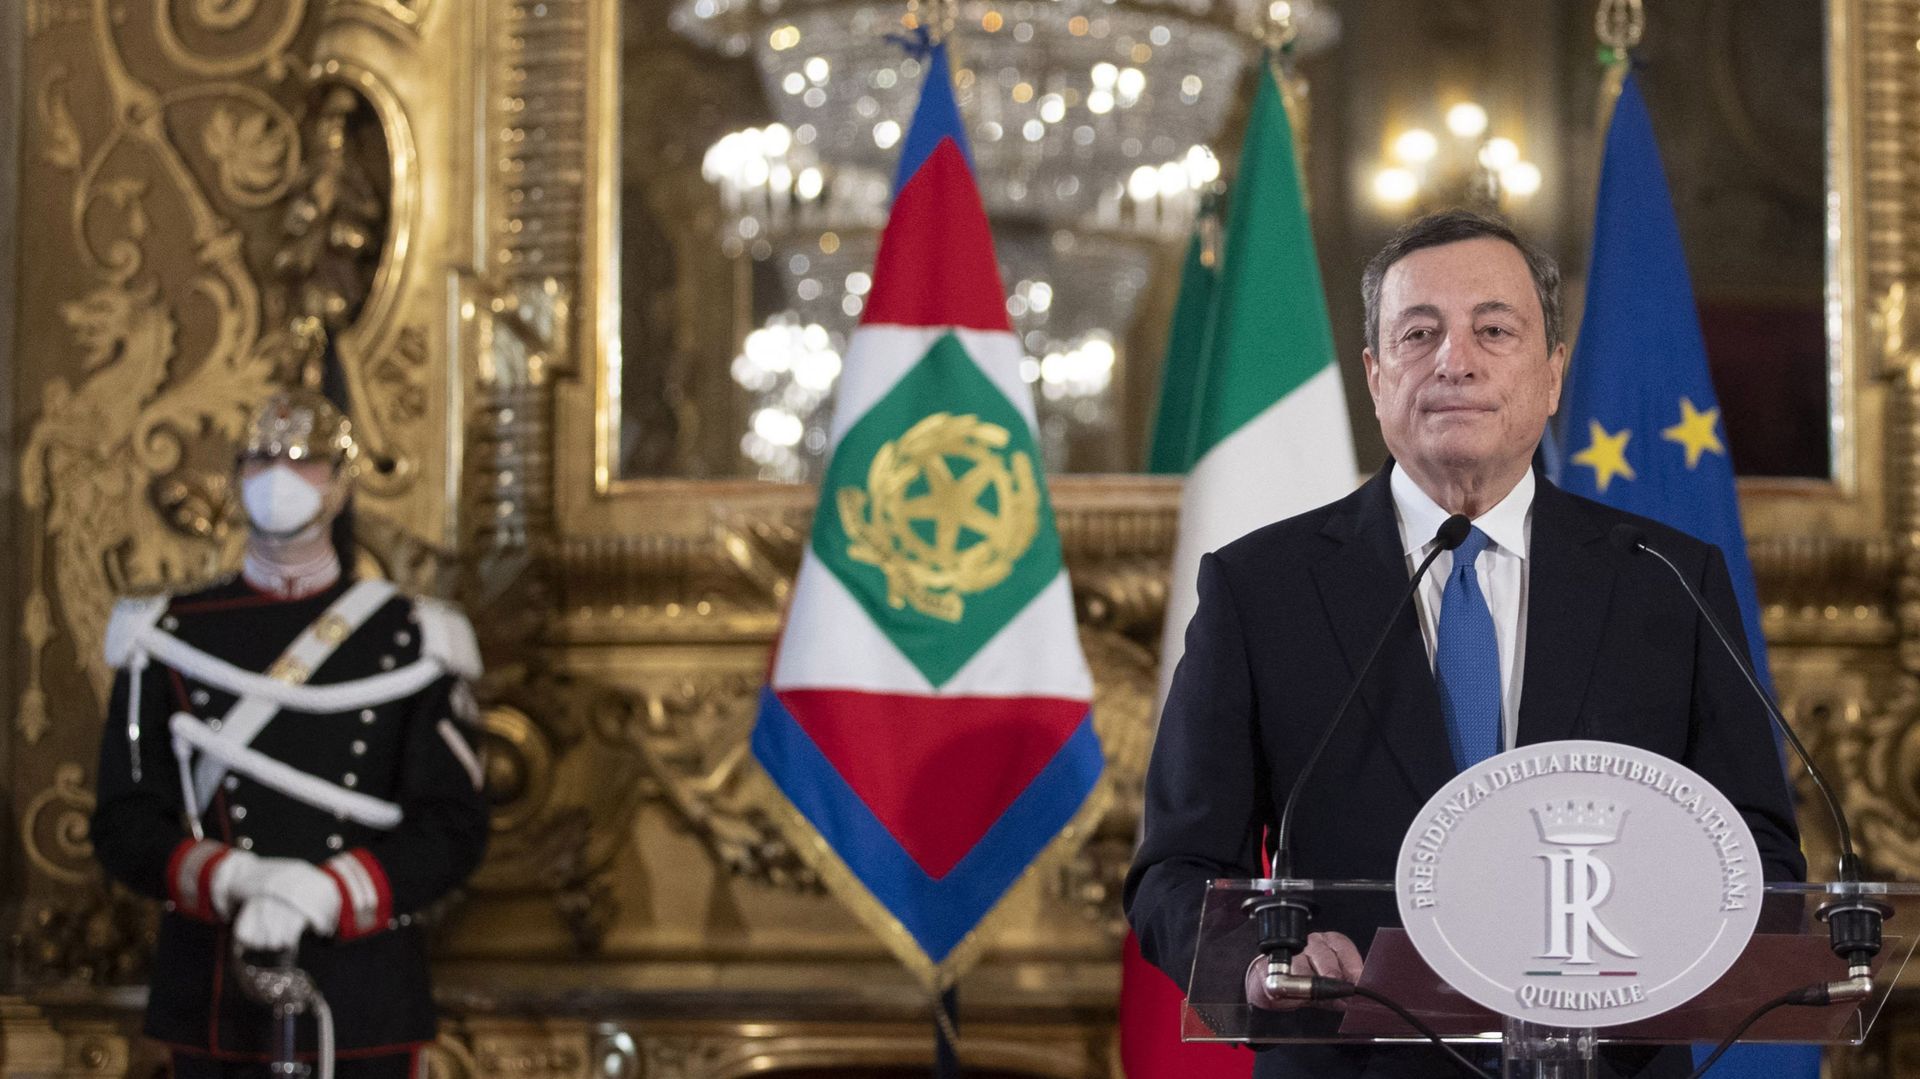 Fort d'un large soutien, Mario Draghi, "le sauveur de la Patrie", va prendre le gouvernail de l'Italie